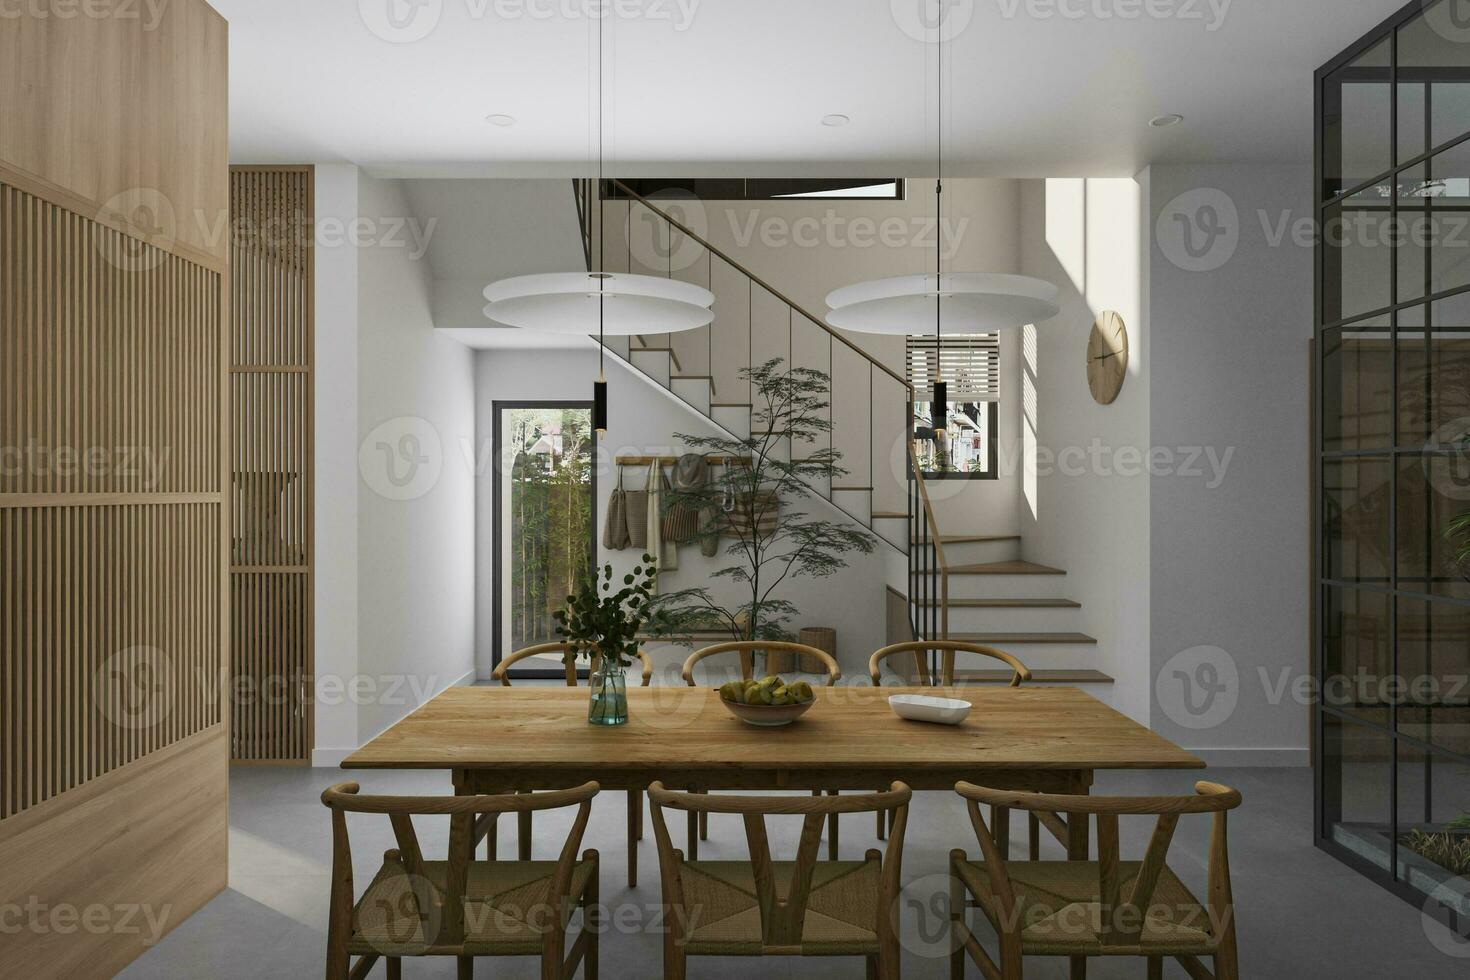 minimalista jantar Visão No geral pode Vejo escadaria, vestíbulo espaço interior com de madeira mobiliário. casa decoração 3d Renderização foto